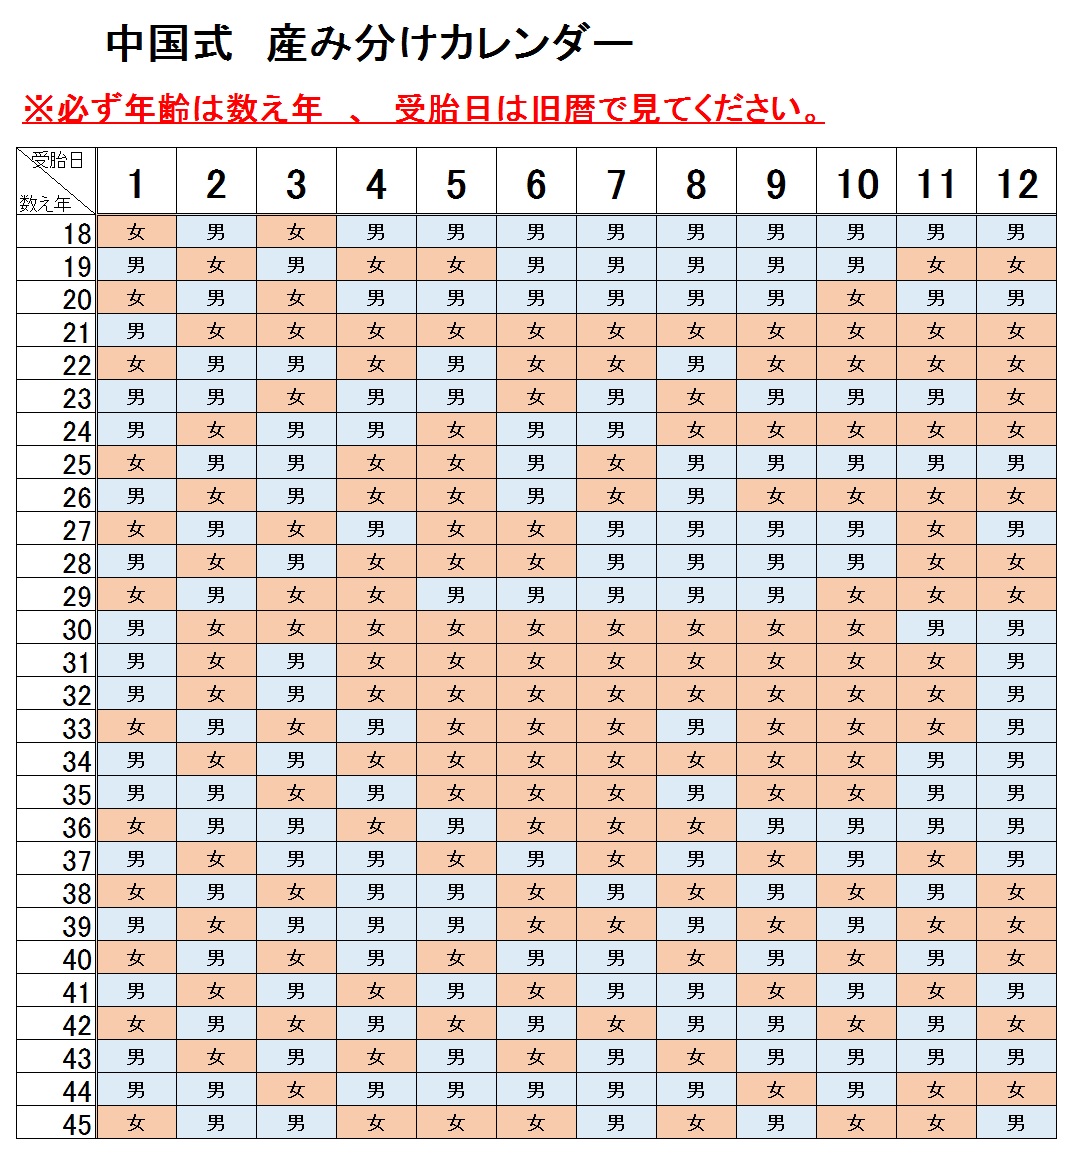 産み分けカレンダー 自動計算